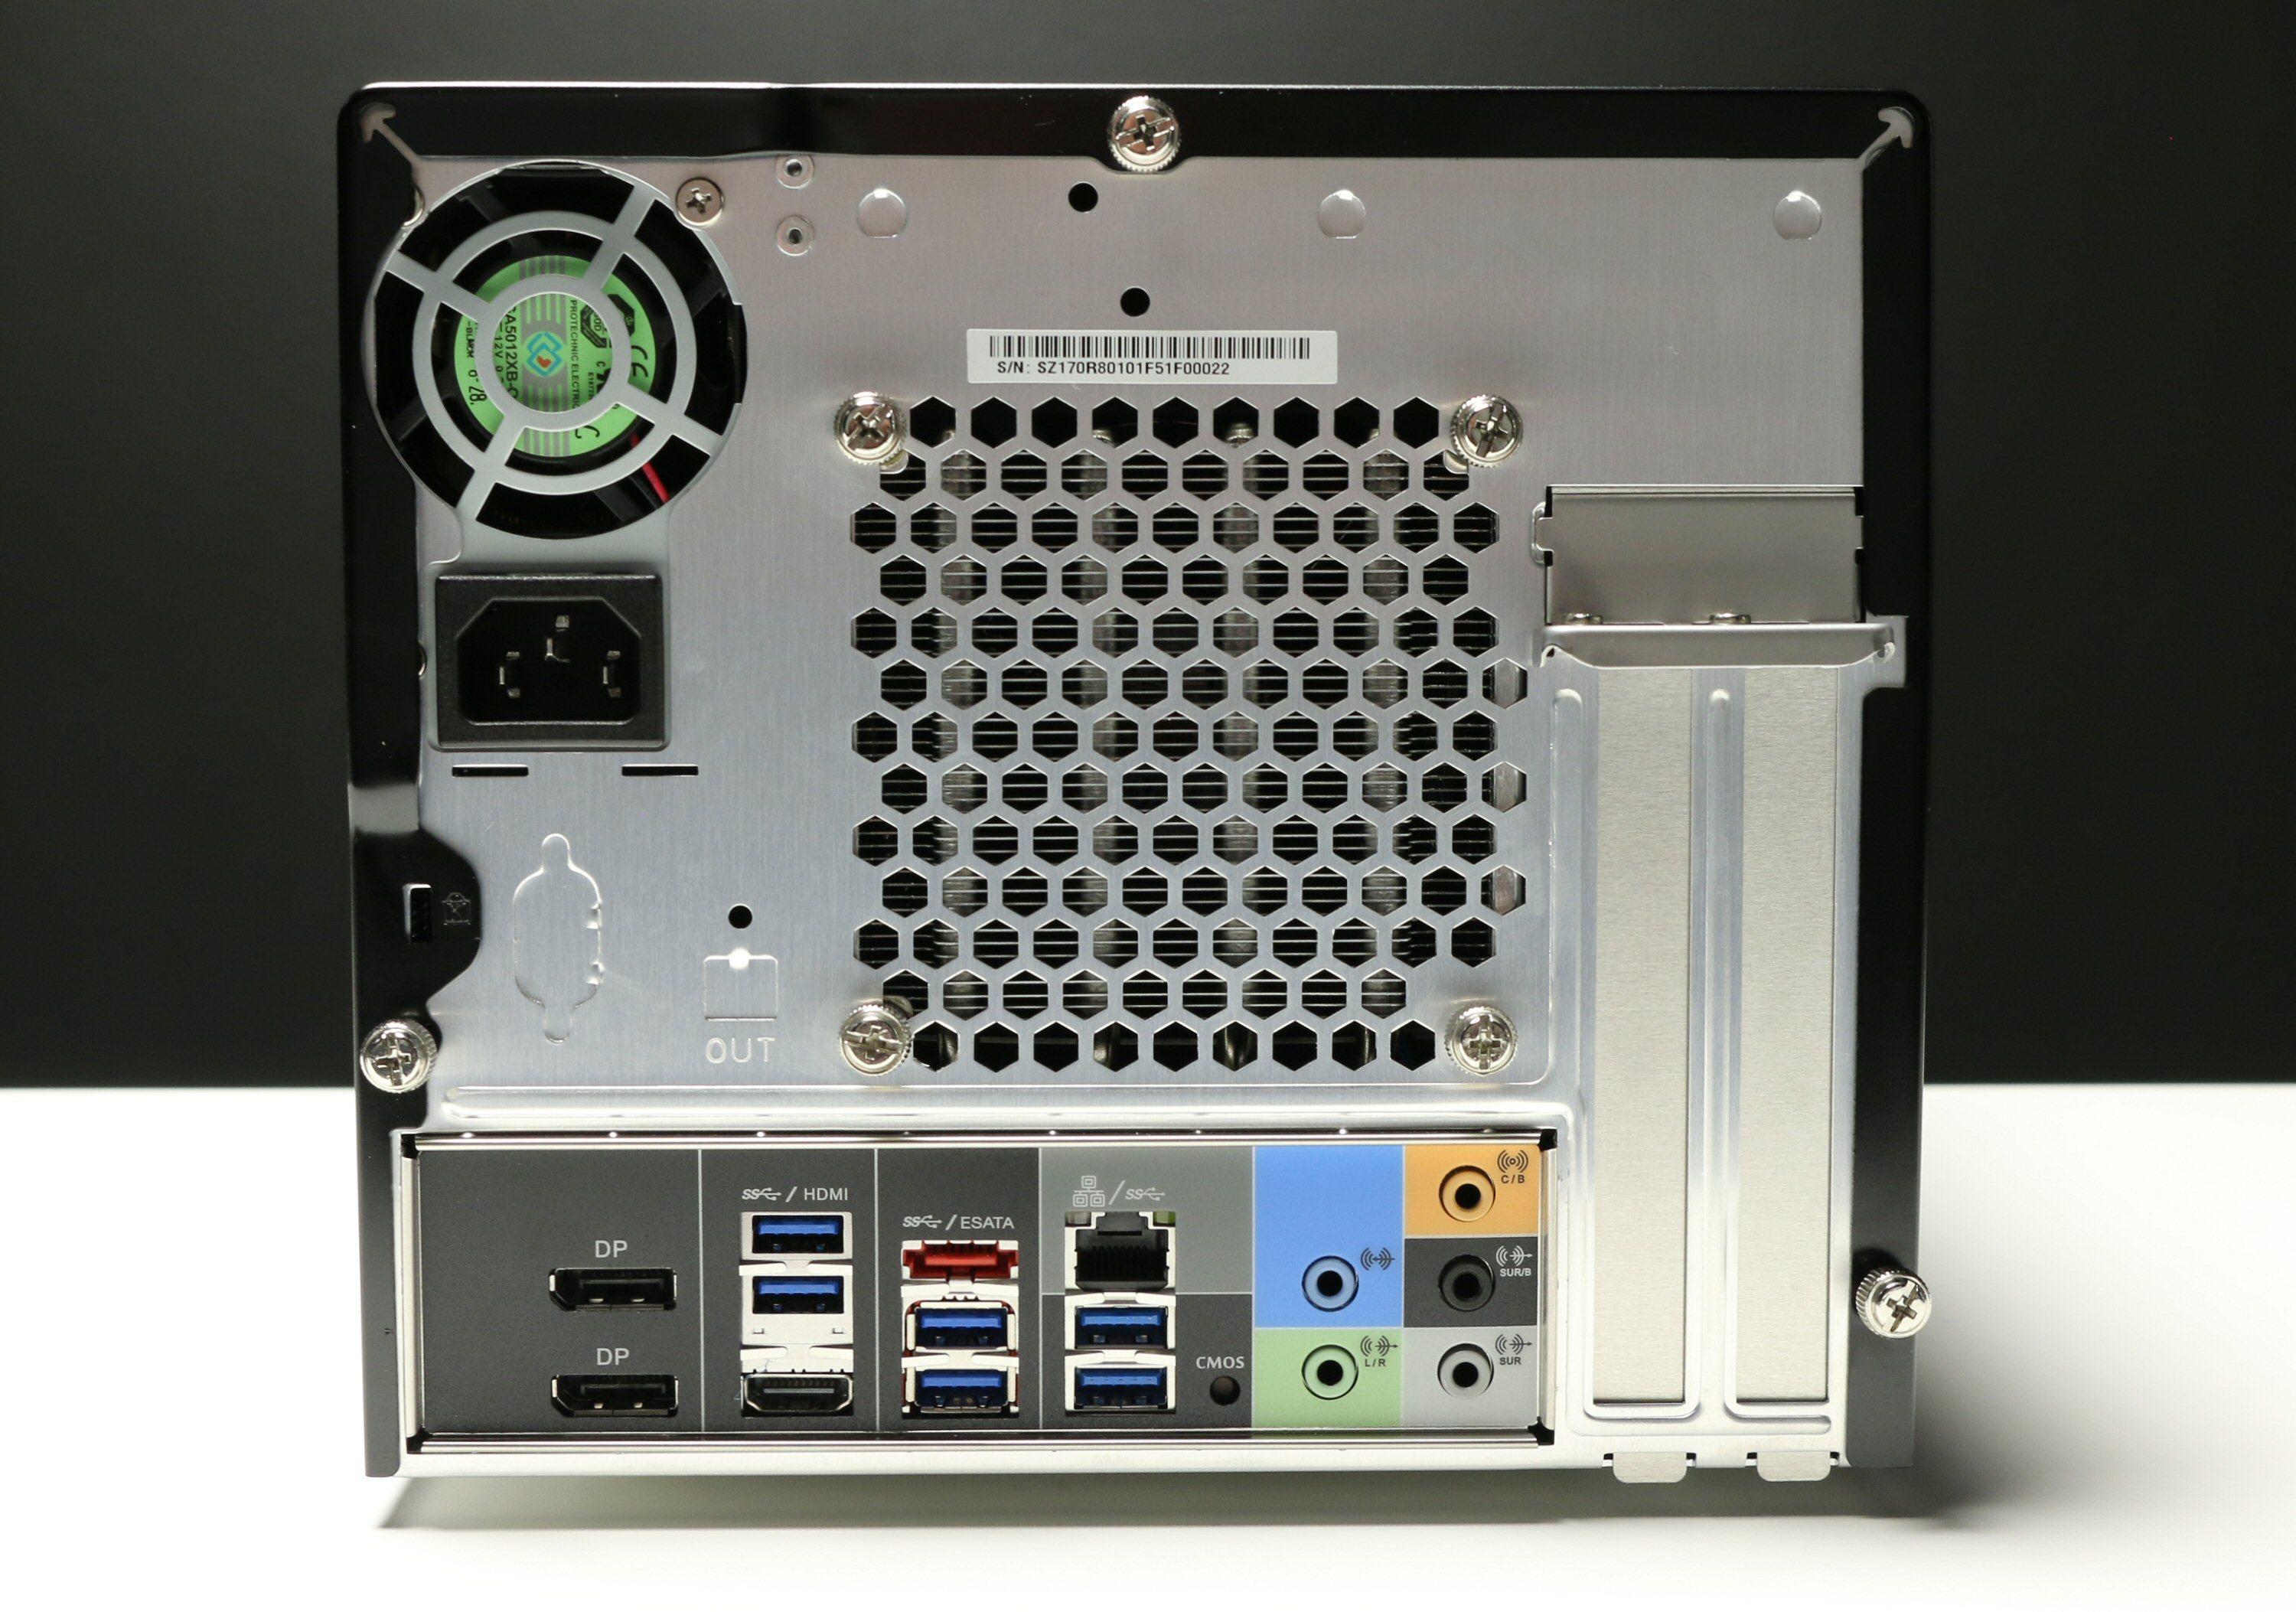 Baksiden av Shuttle SZ170R8, med den lille PSU-vifta oppe til venstre. På høyre side ser vi de avtagbare skinnene som gjør plass til et grafikkort eller annet tilleggskort. På hovedkortet i bunnen har vi to DisplayPort-kontakter, en HDMI 1.4, gigabit LAN, seks USB 3.0, en eSATA-port og minijacker for lyd.